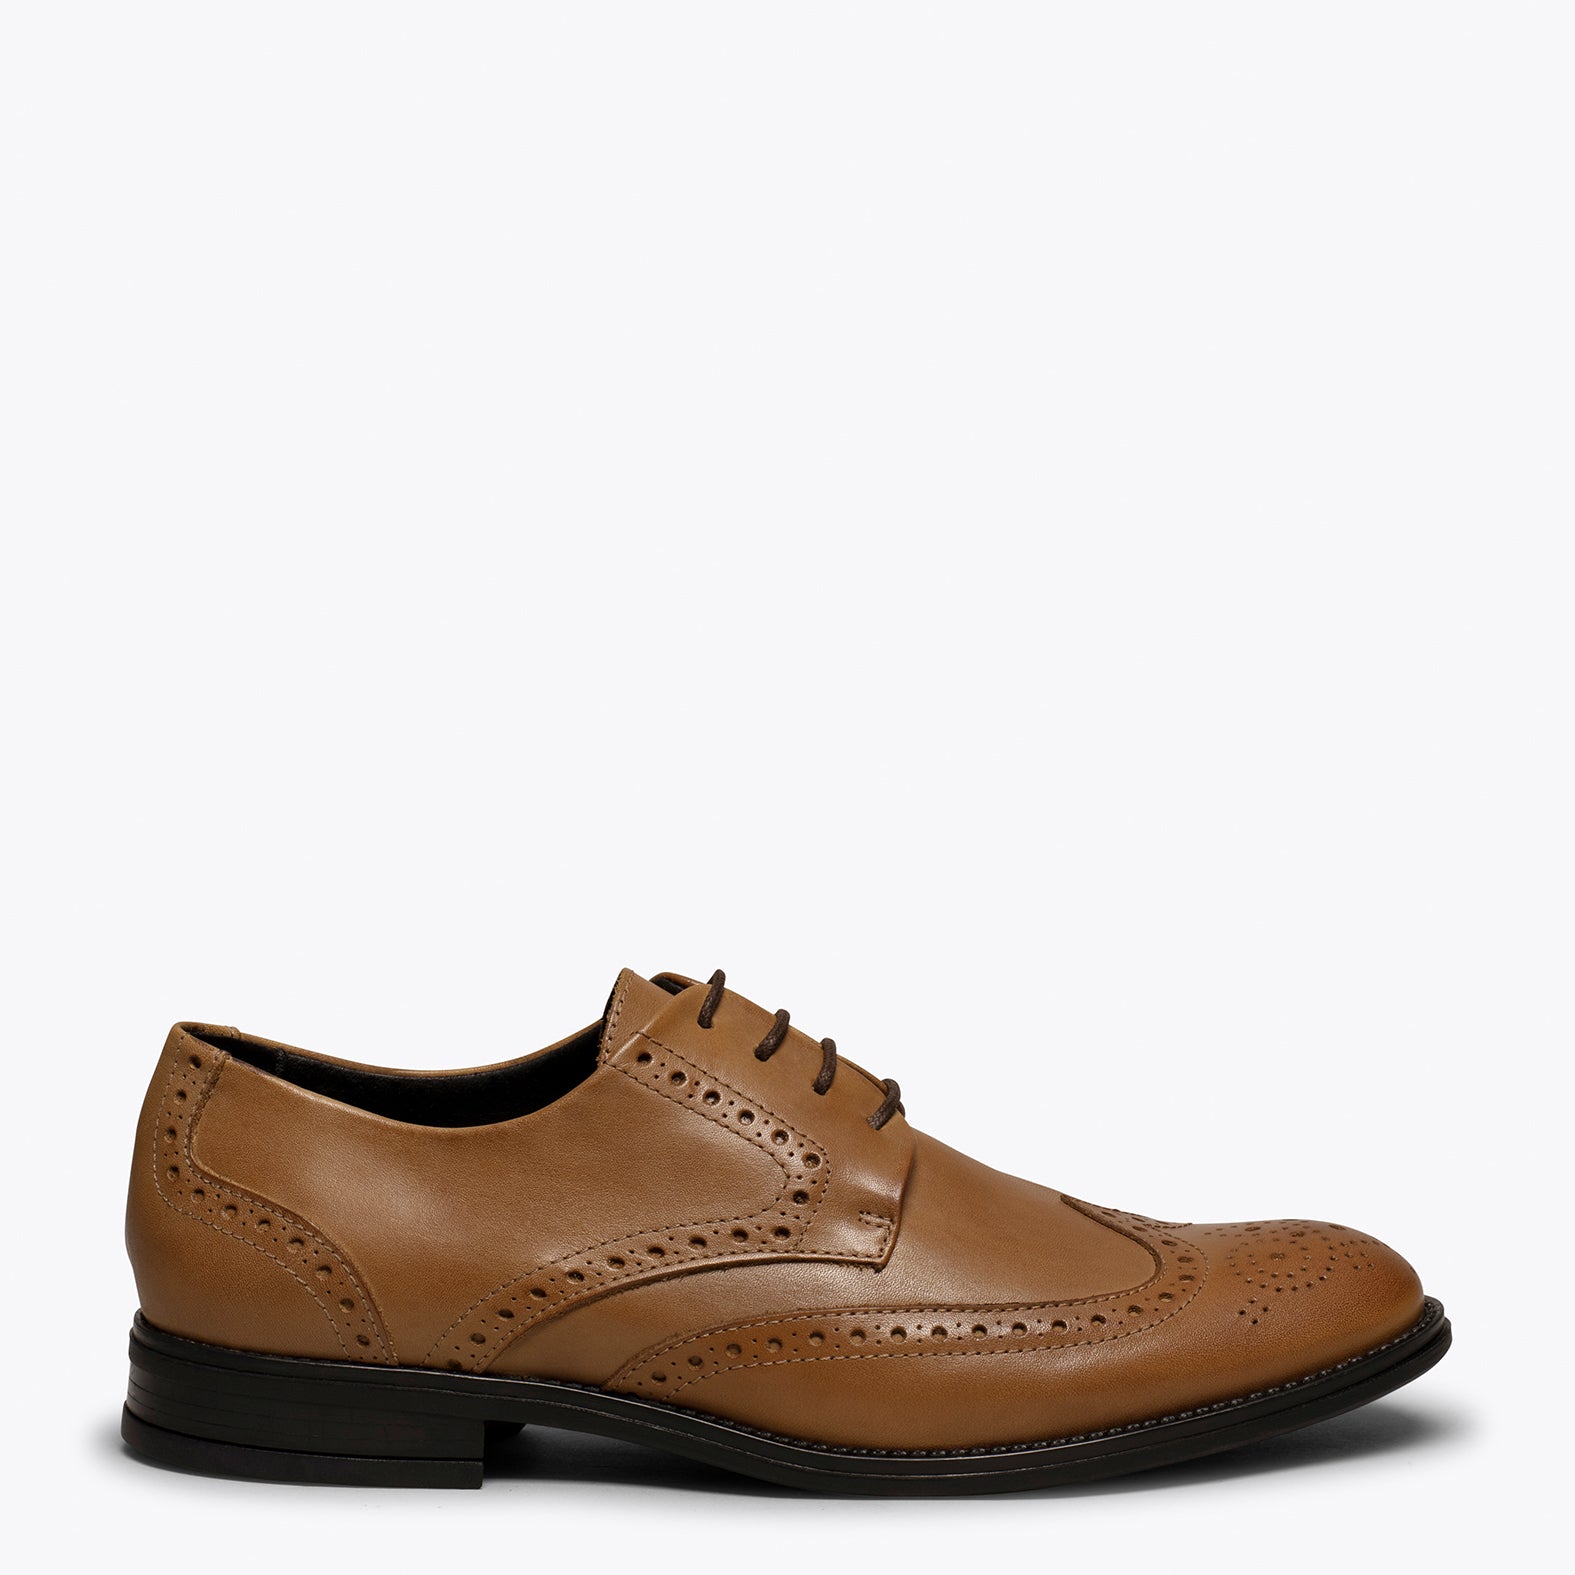 OXFORD- CAMEL Oxford shoe for men